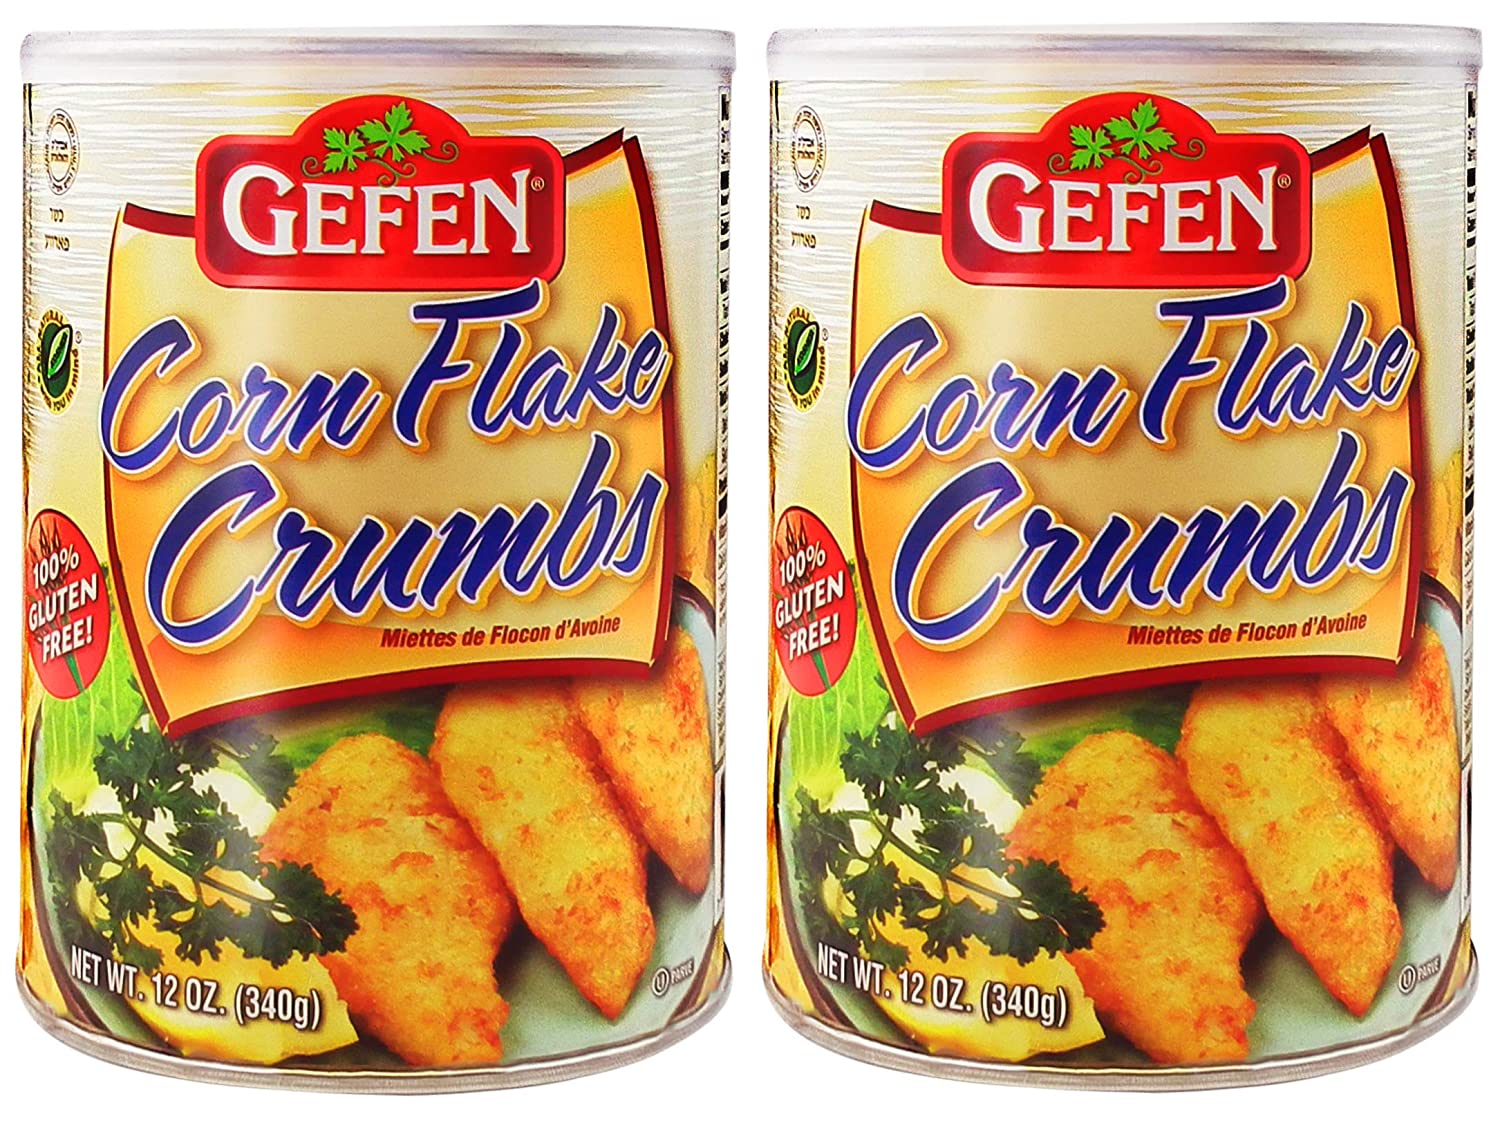 Gluten Free Corn Flake Crumbs, 12oz (1 Pack)